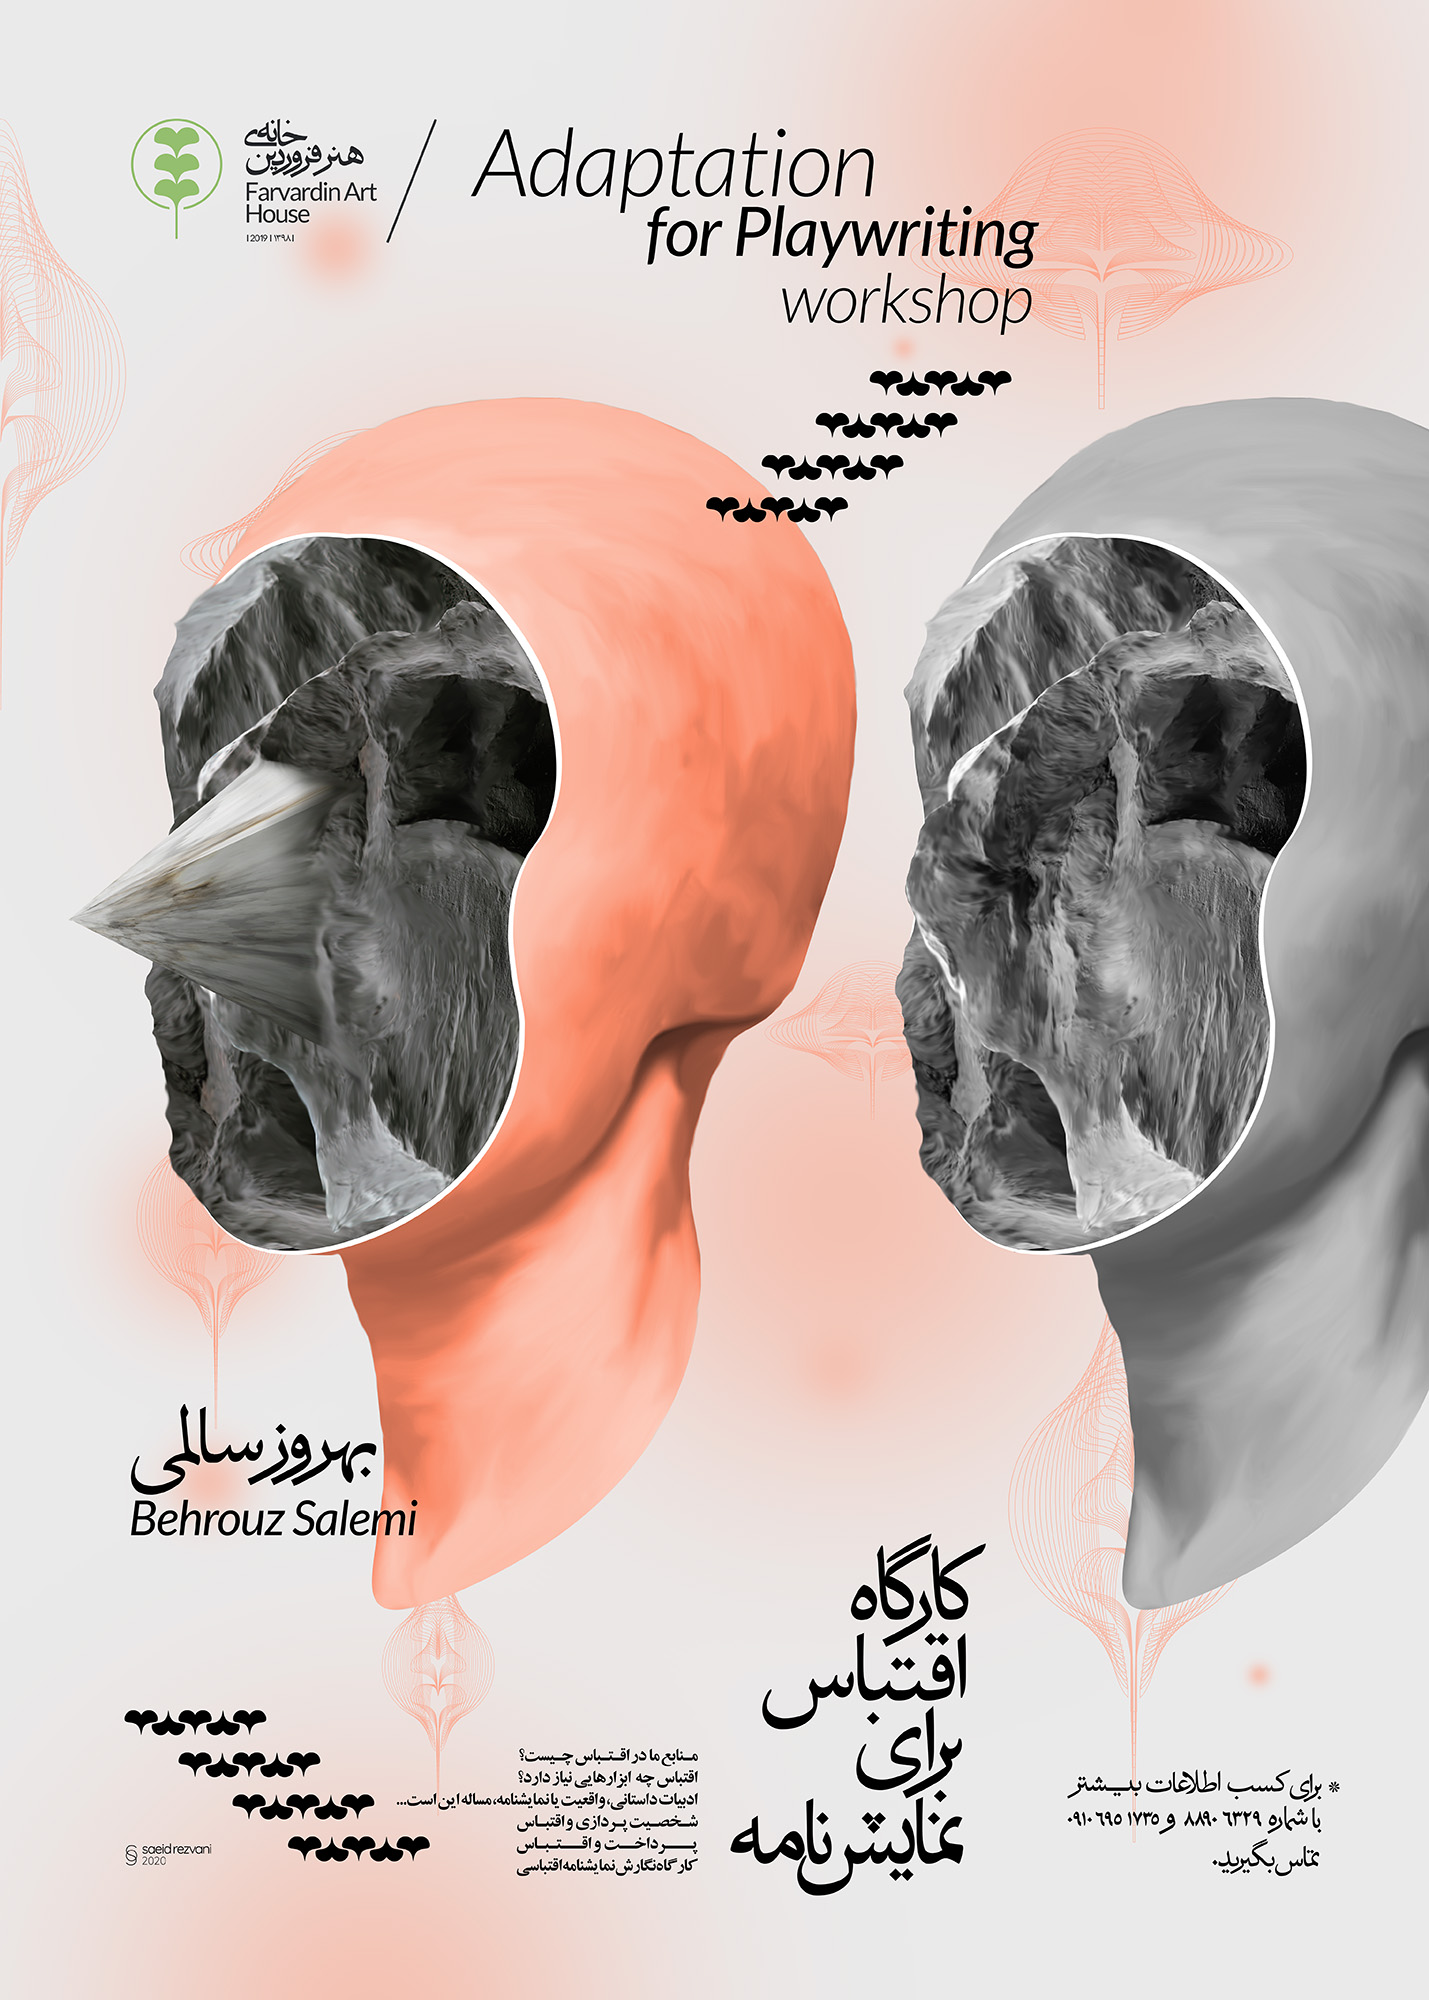 سعید رضوانی | پوستر ایران | Saeid Rezvani